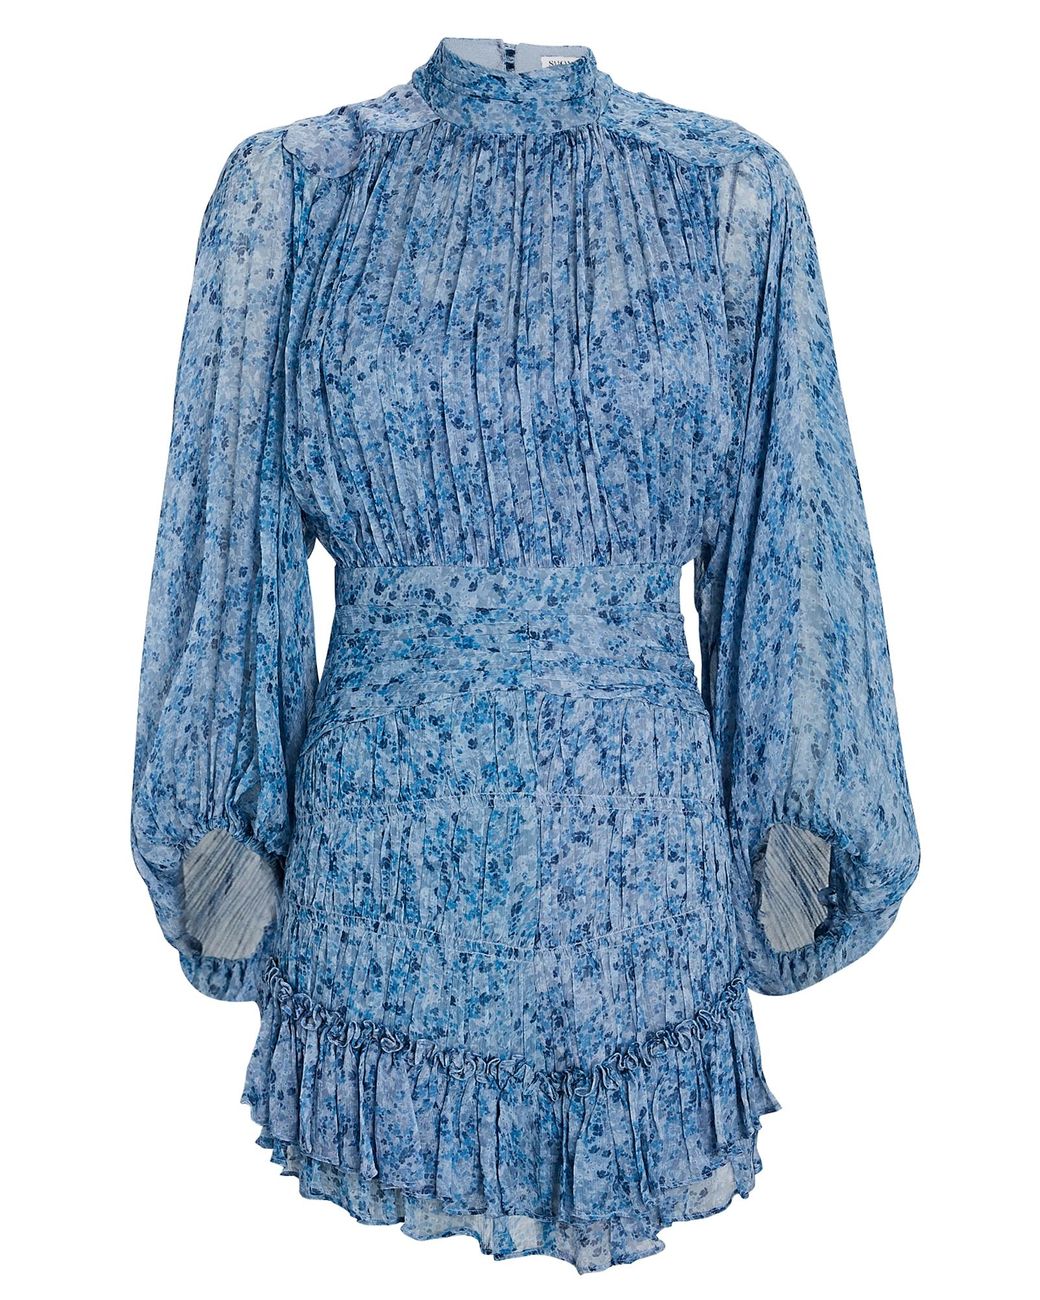 Shona Joy Harmony Floral Chiffon Mini Dress in Blue